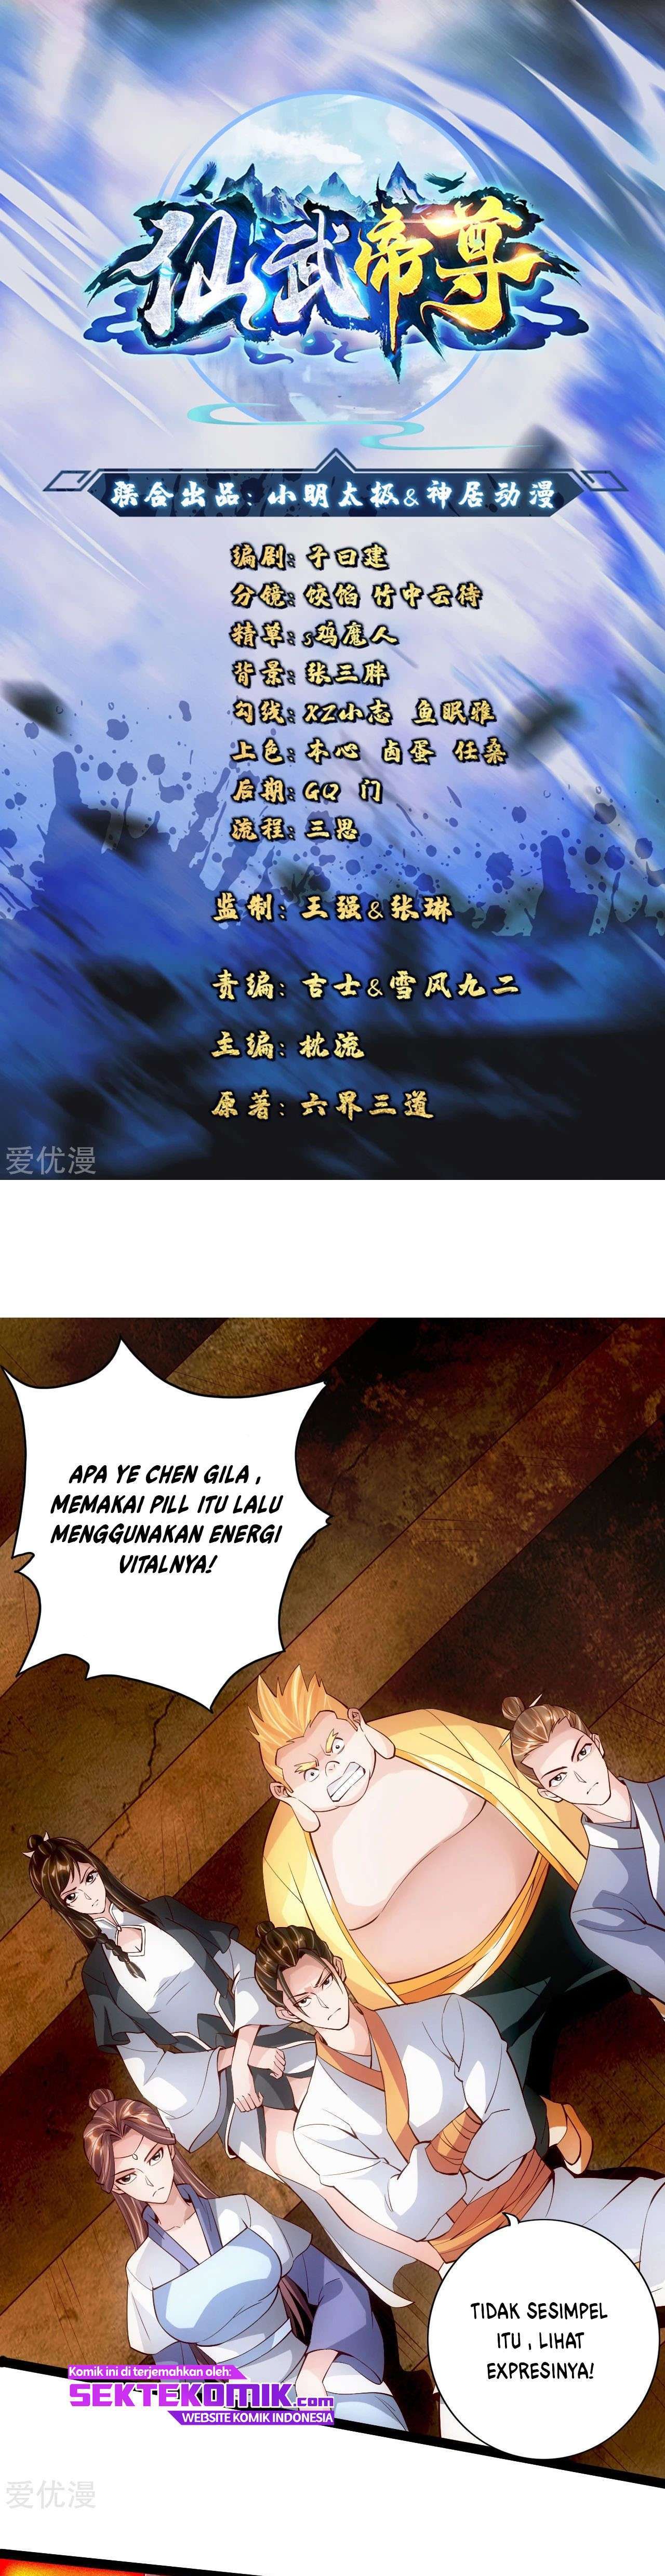 Xianwu Dizun Chapter 104